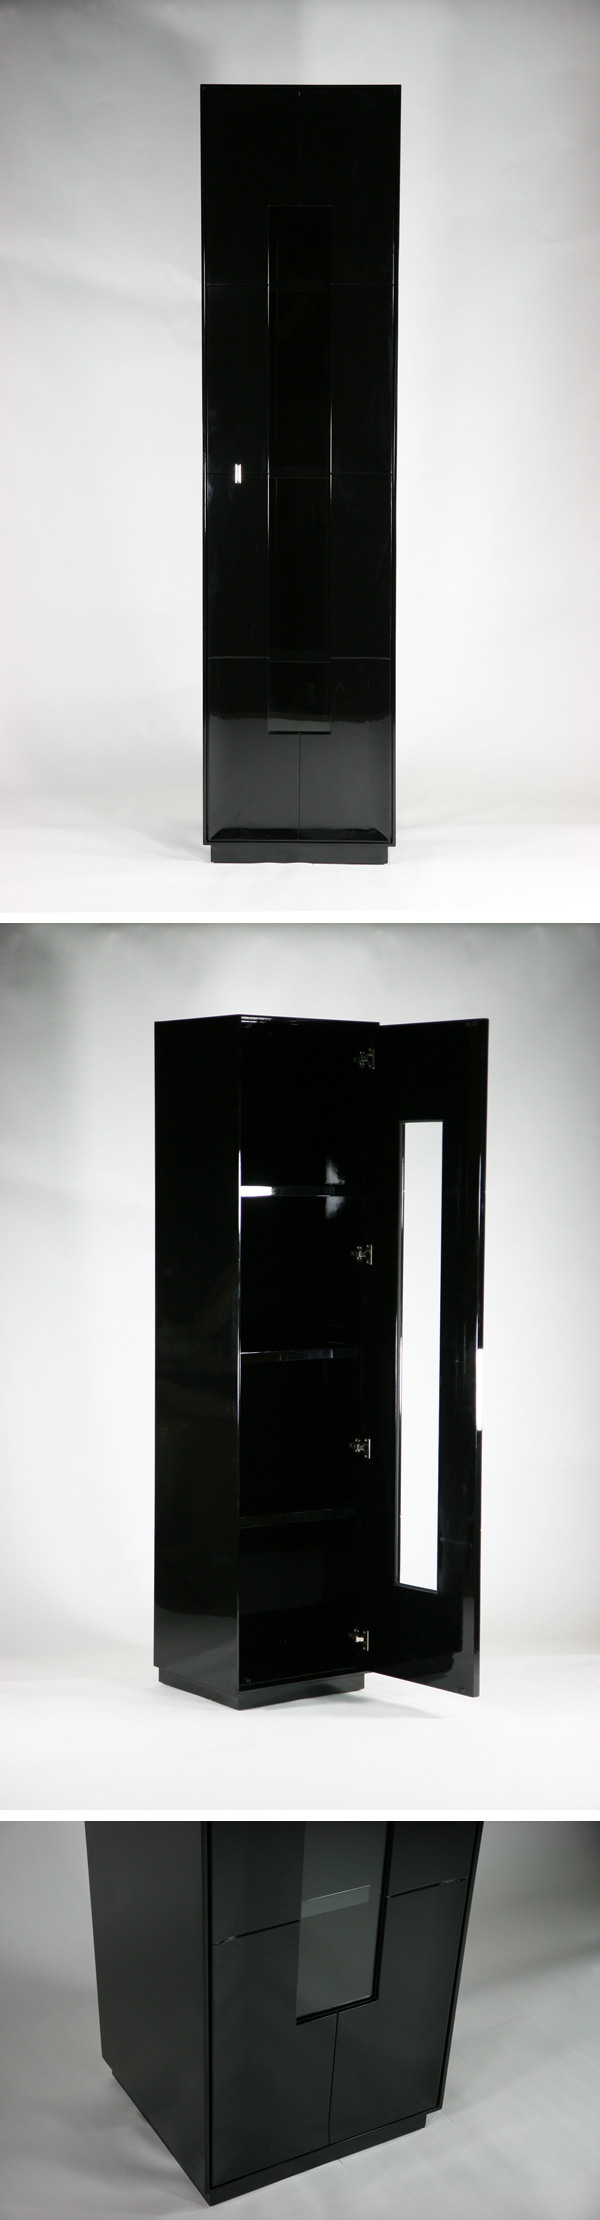 【発送】送料無料 新品 大型 1door キャビネット コレクションボード 飾り棚 完成品 ブラック 飾り棚